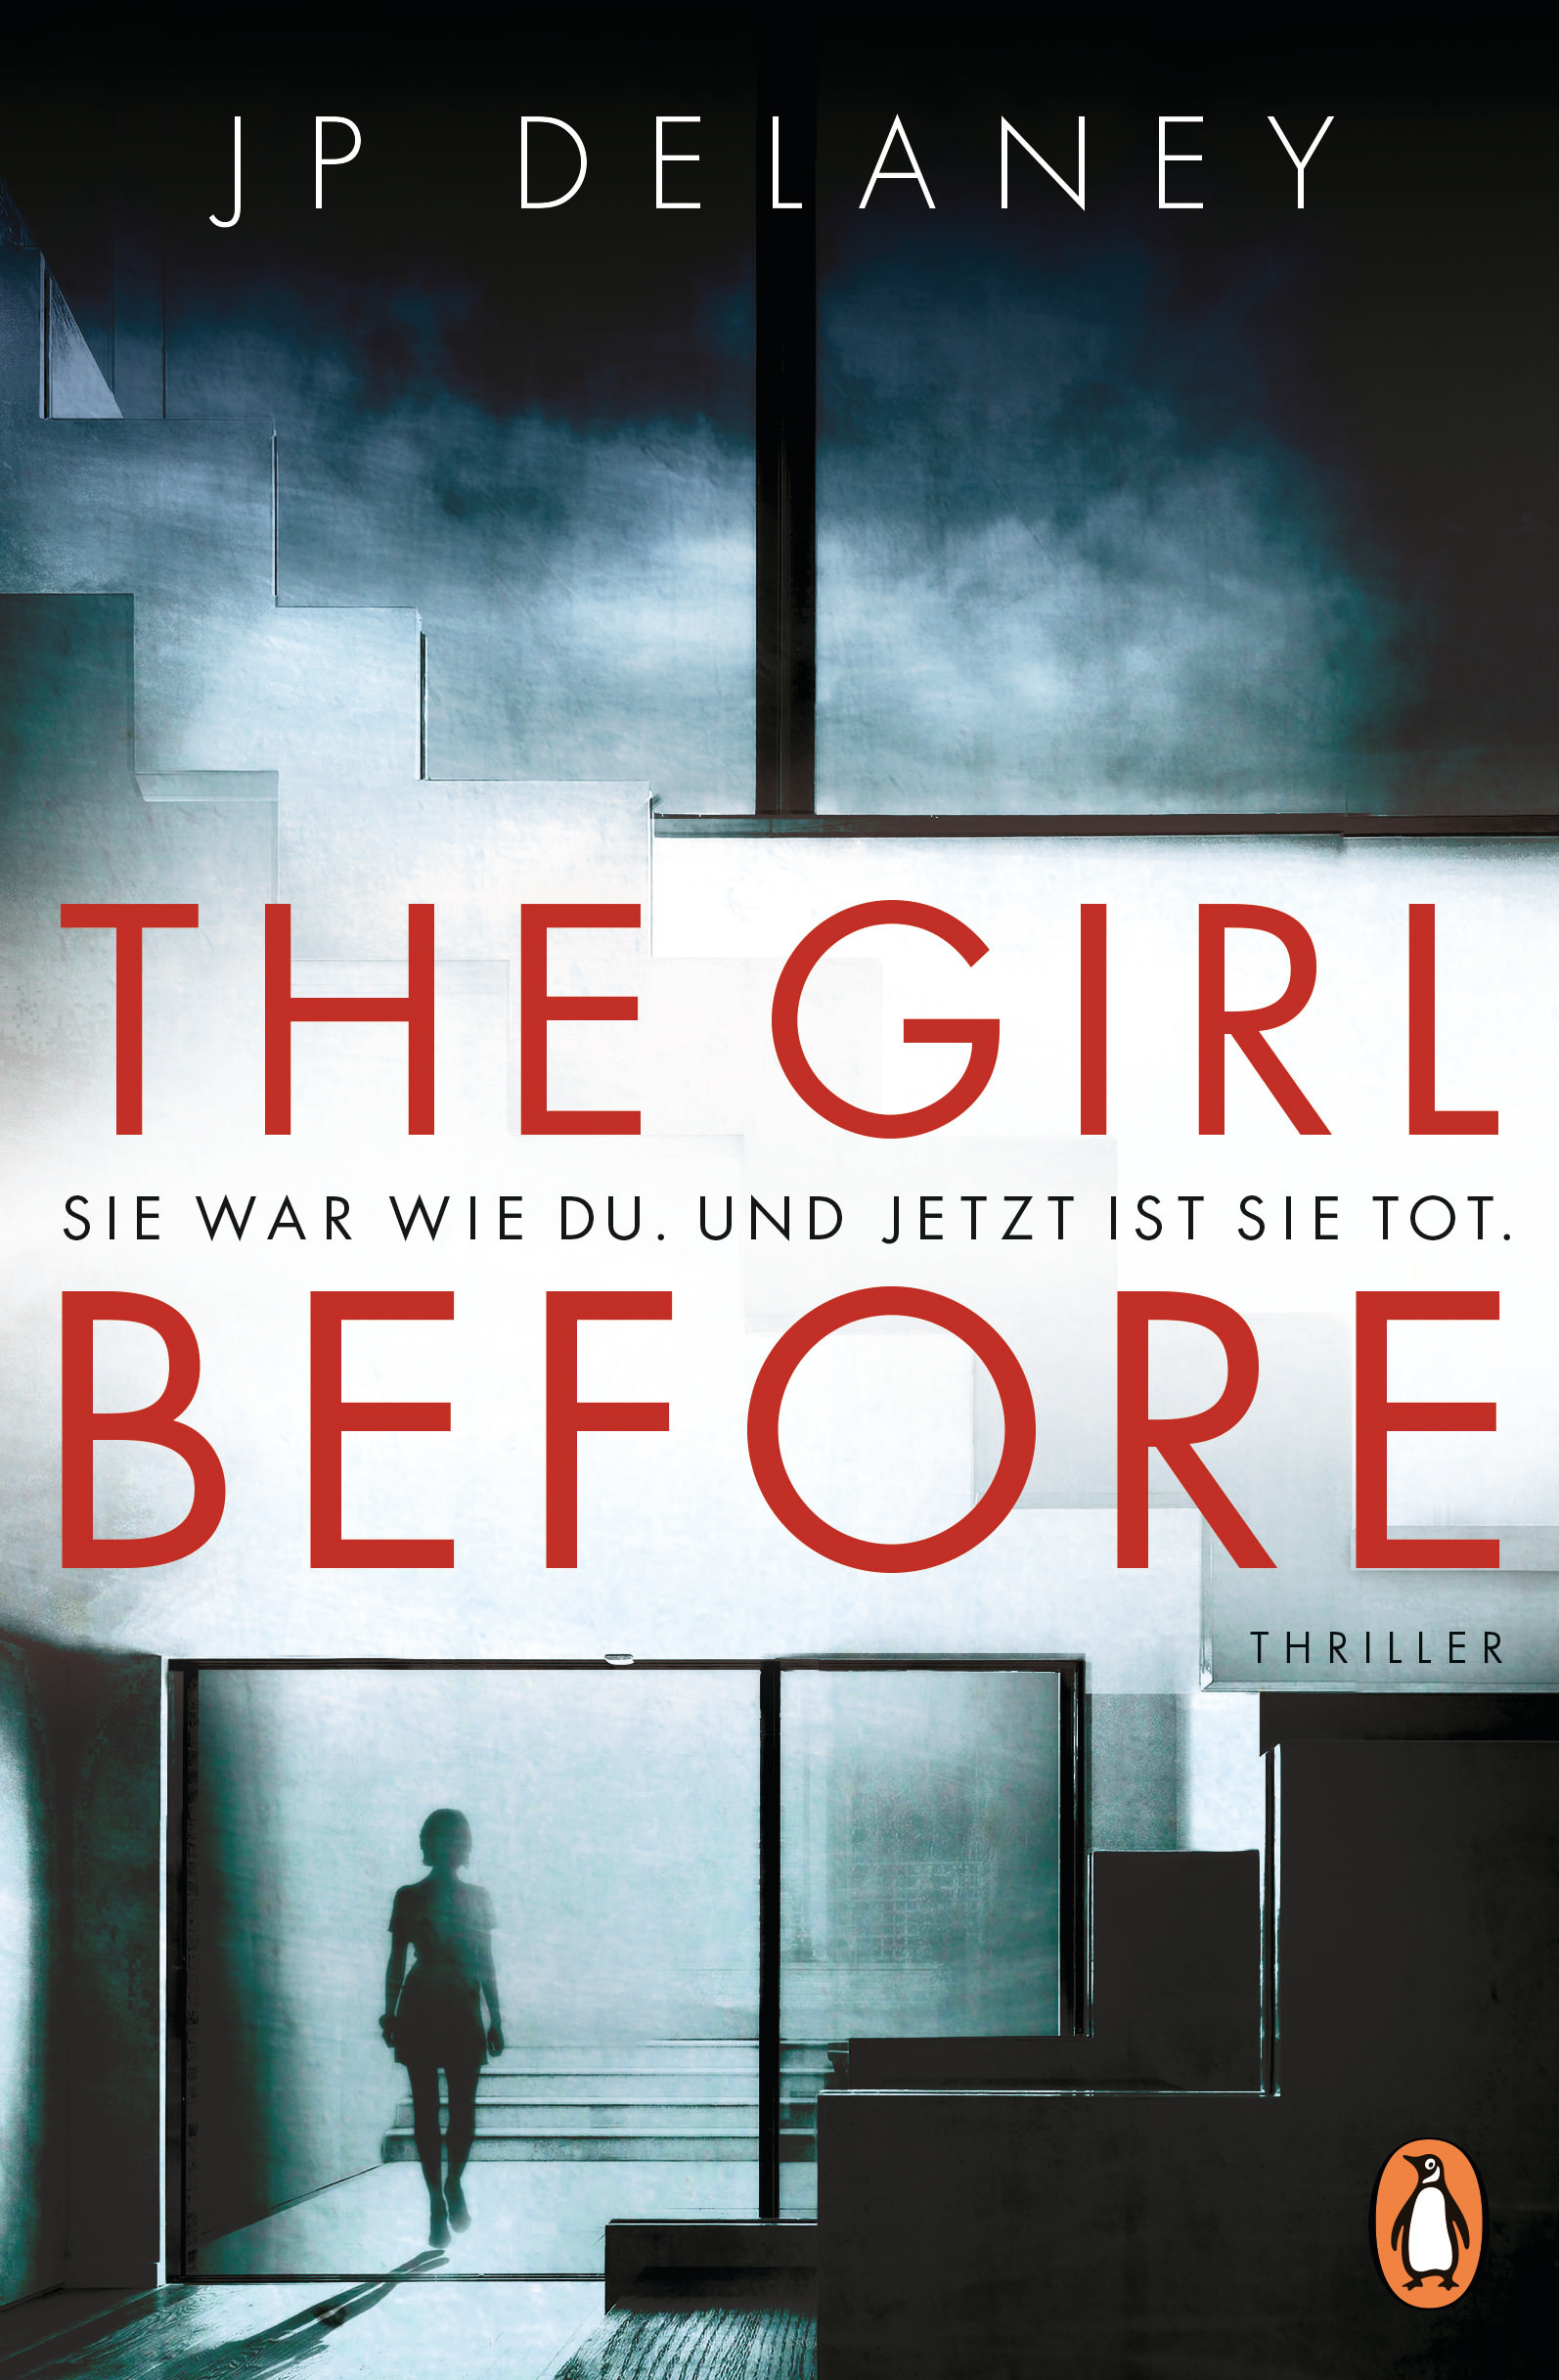 Buchcover: JP Delaney: The Girl Before. Penguin Verlag